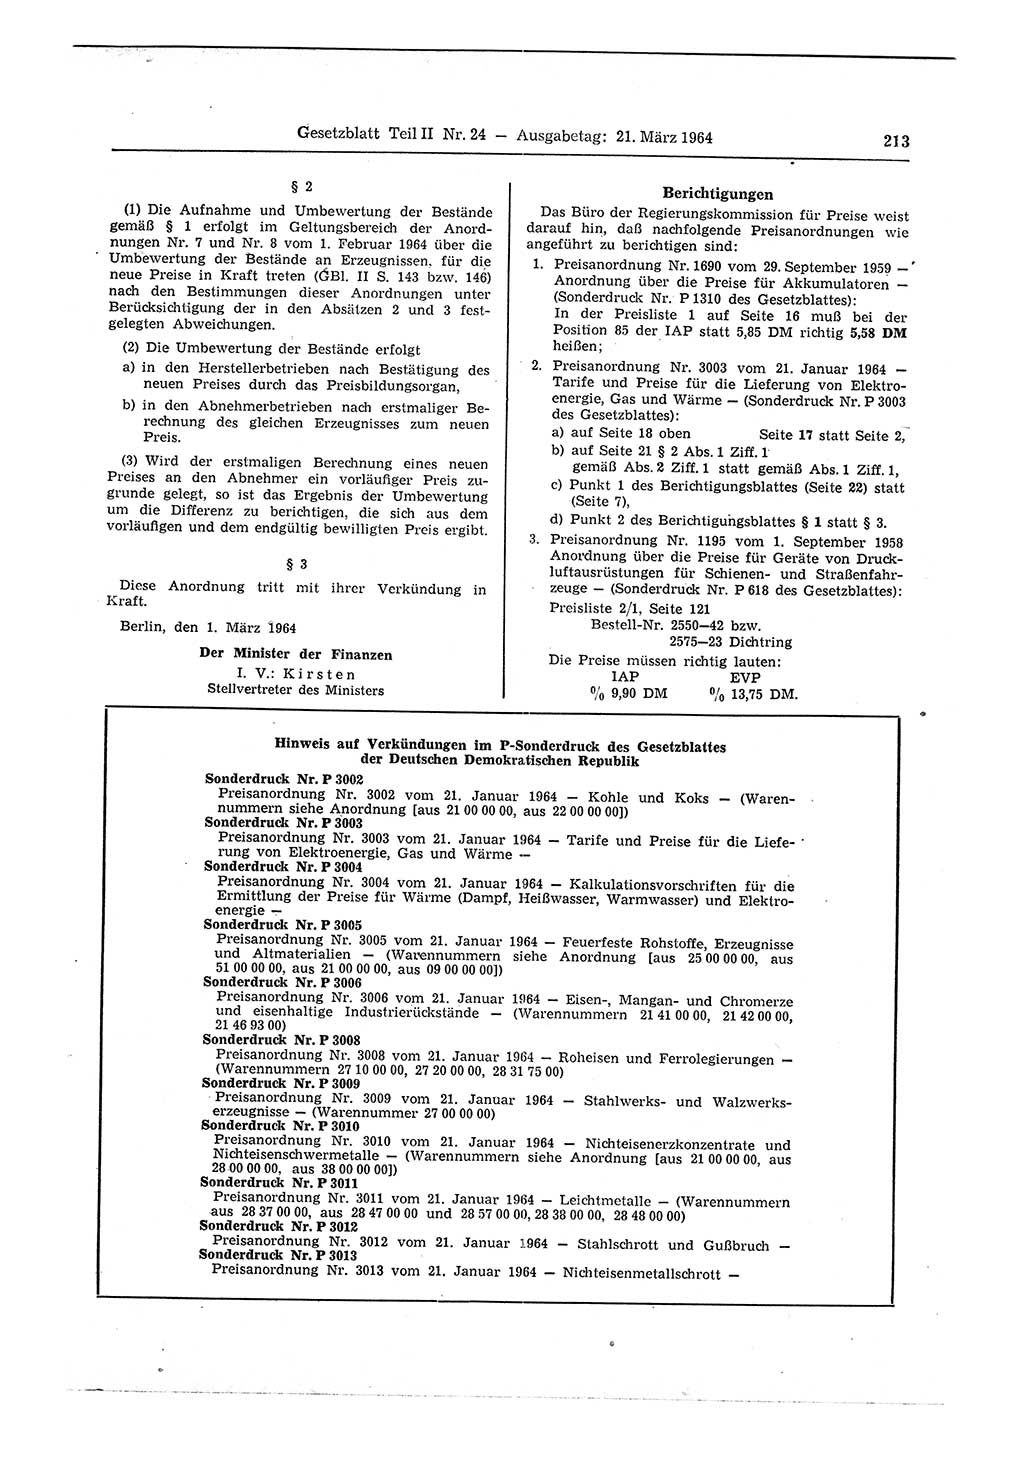 Gesetzblatt (GBl.) der Deutschen Demokratischen Republik (DDR) Teil ⅠⅠ 1964, Seite 213 (GBl. DDR ⅠⅠ 1964, S. 213)